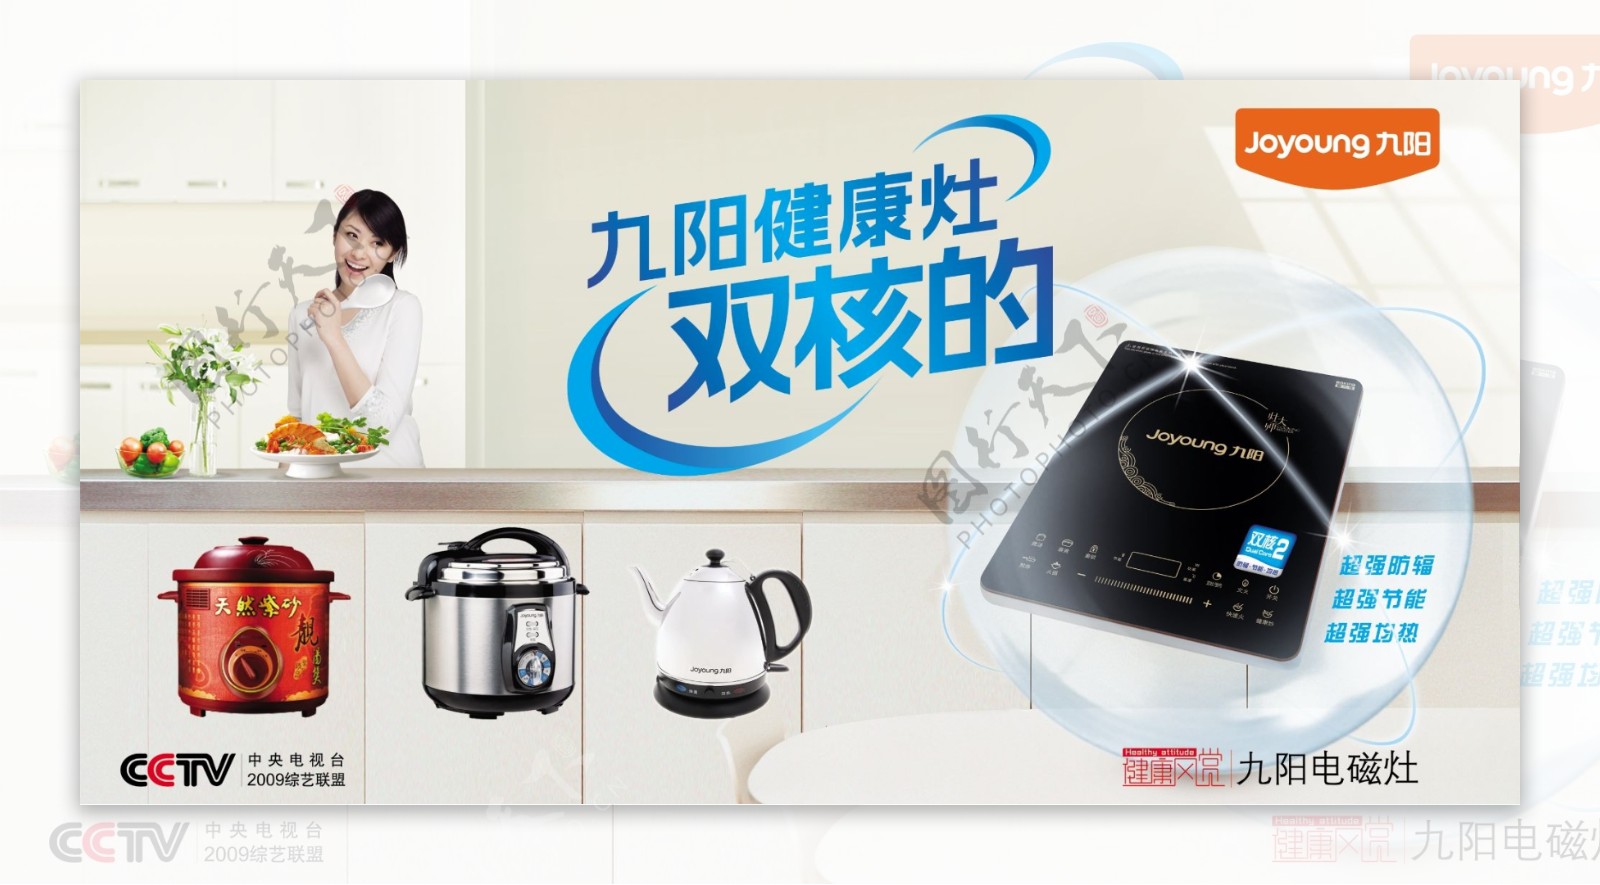 九阳新版电磁炉广告图片